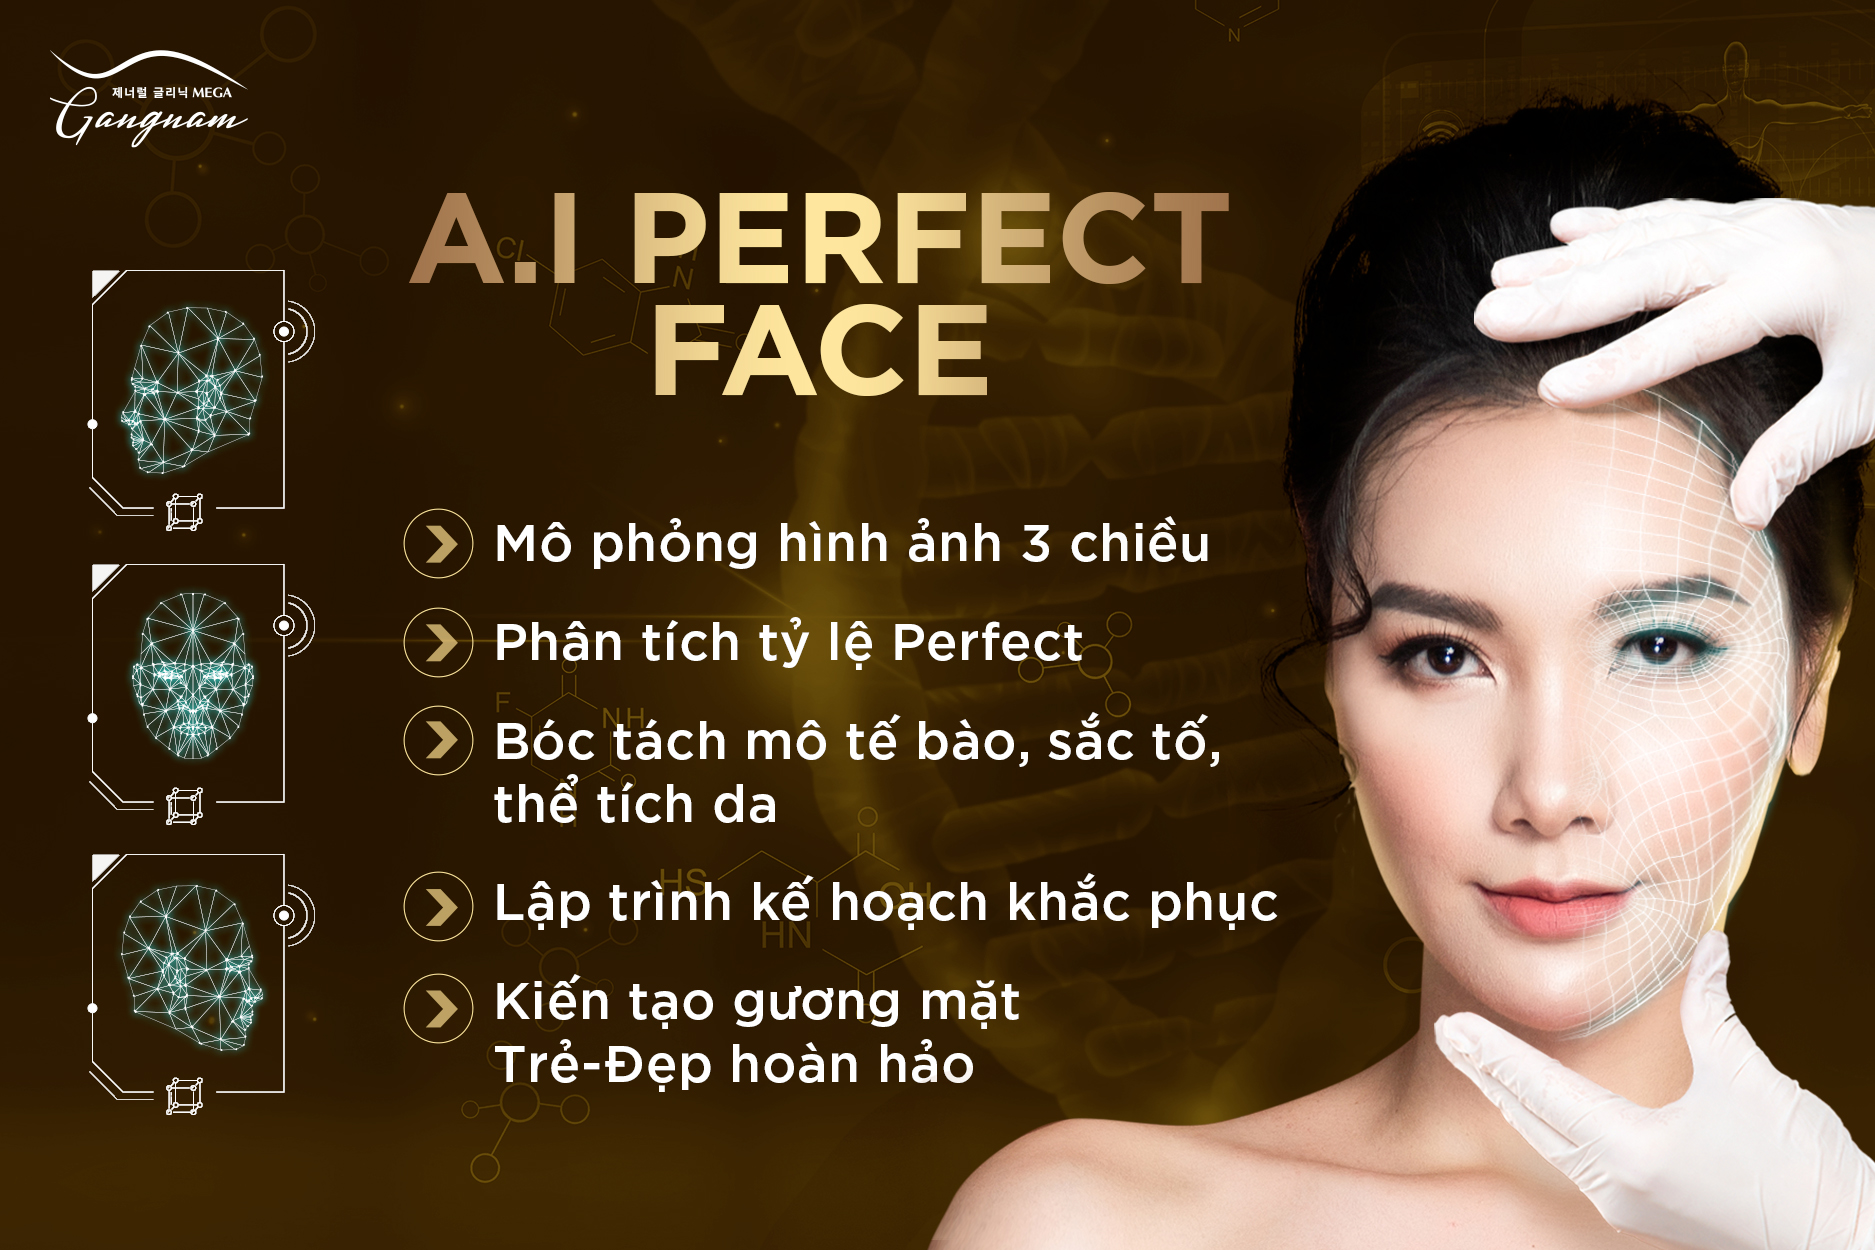 A.I Perfect Face - công nghệ độc quyền chỉ có tại Mega Gangnam